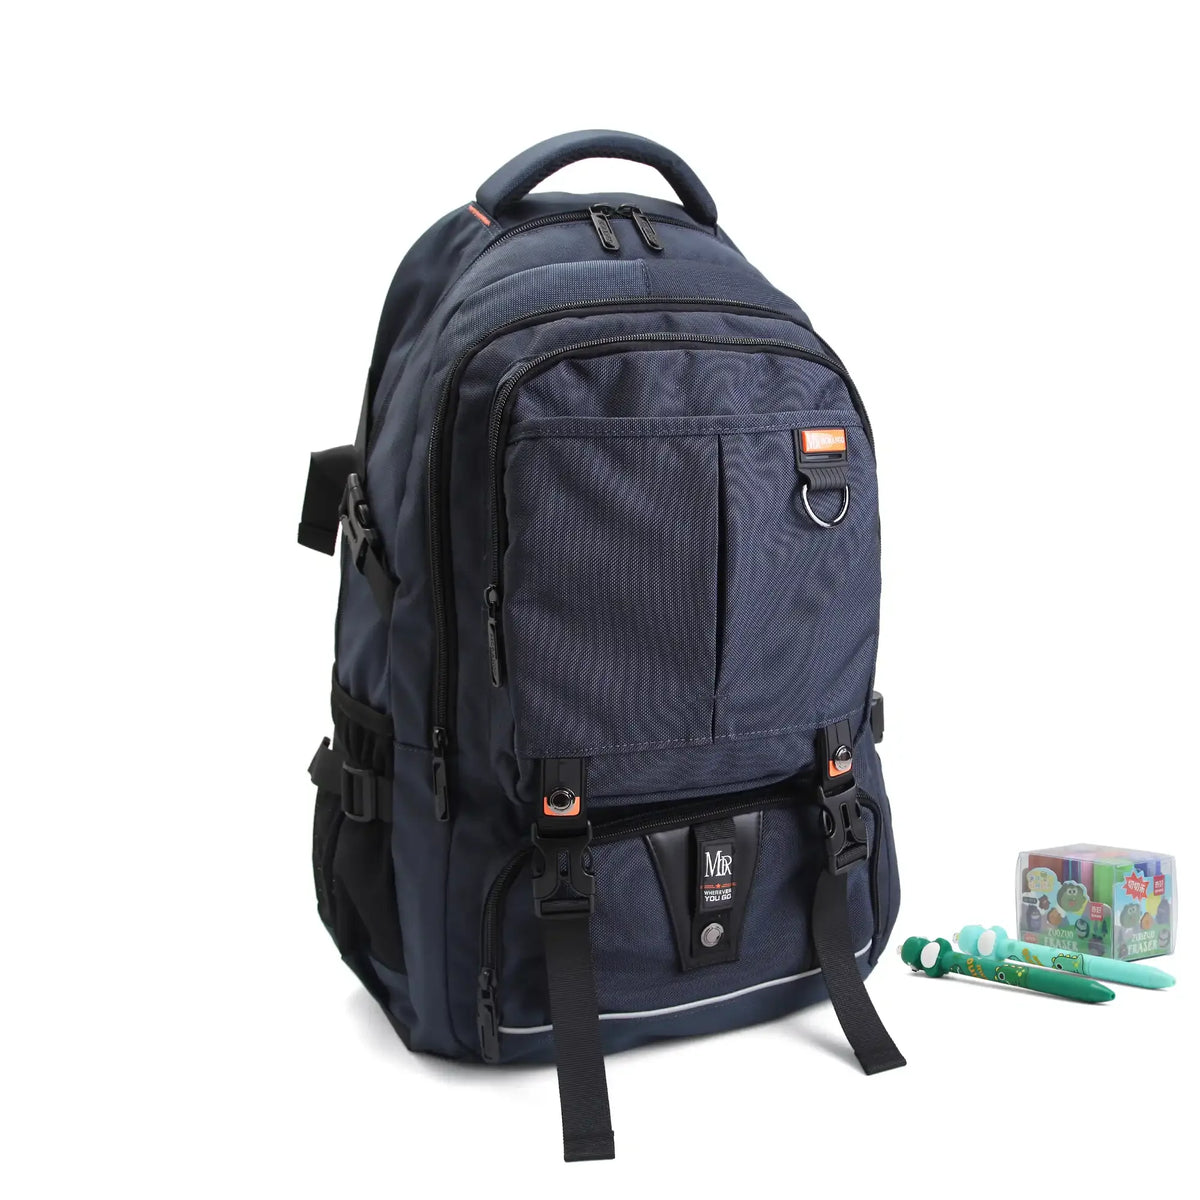 Adjustable Strap Backpack for Men